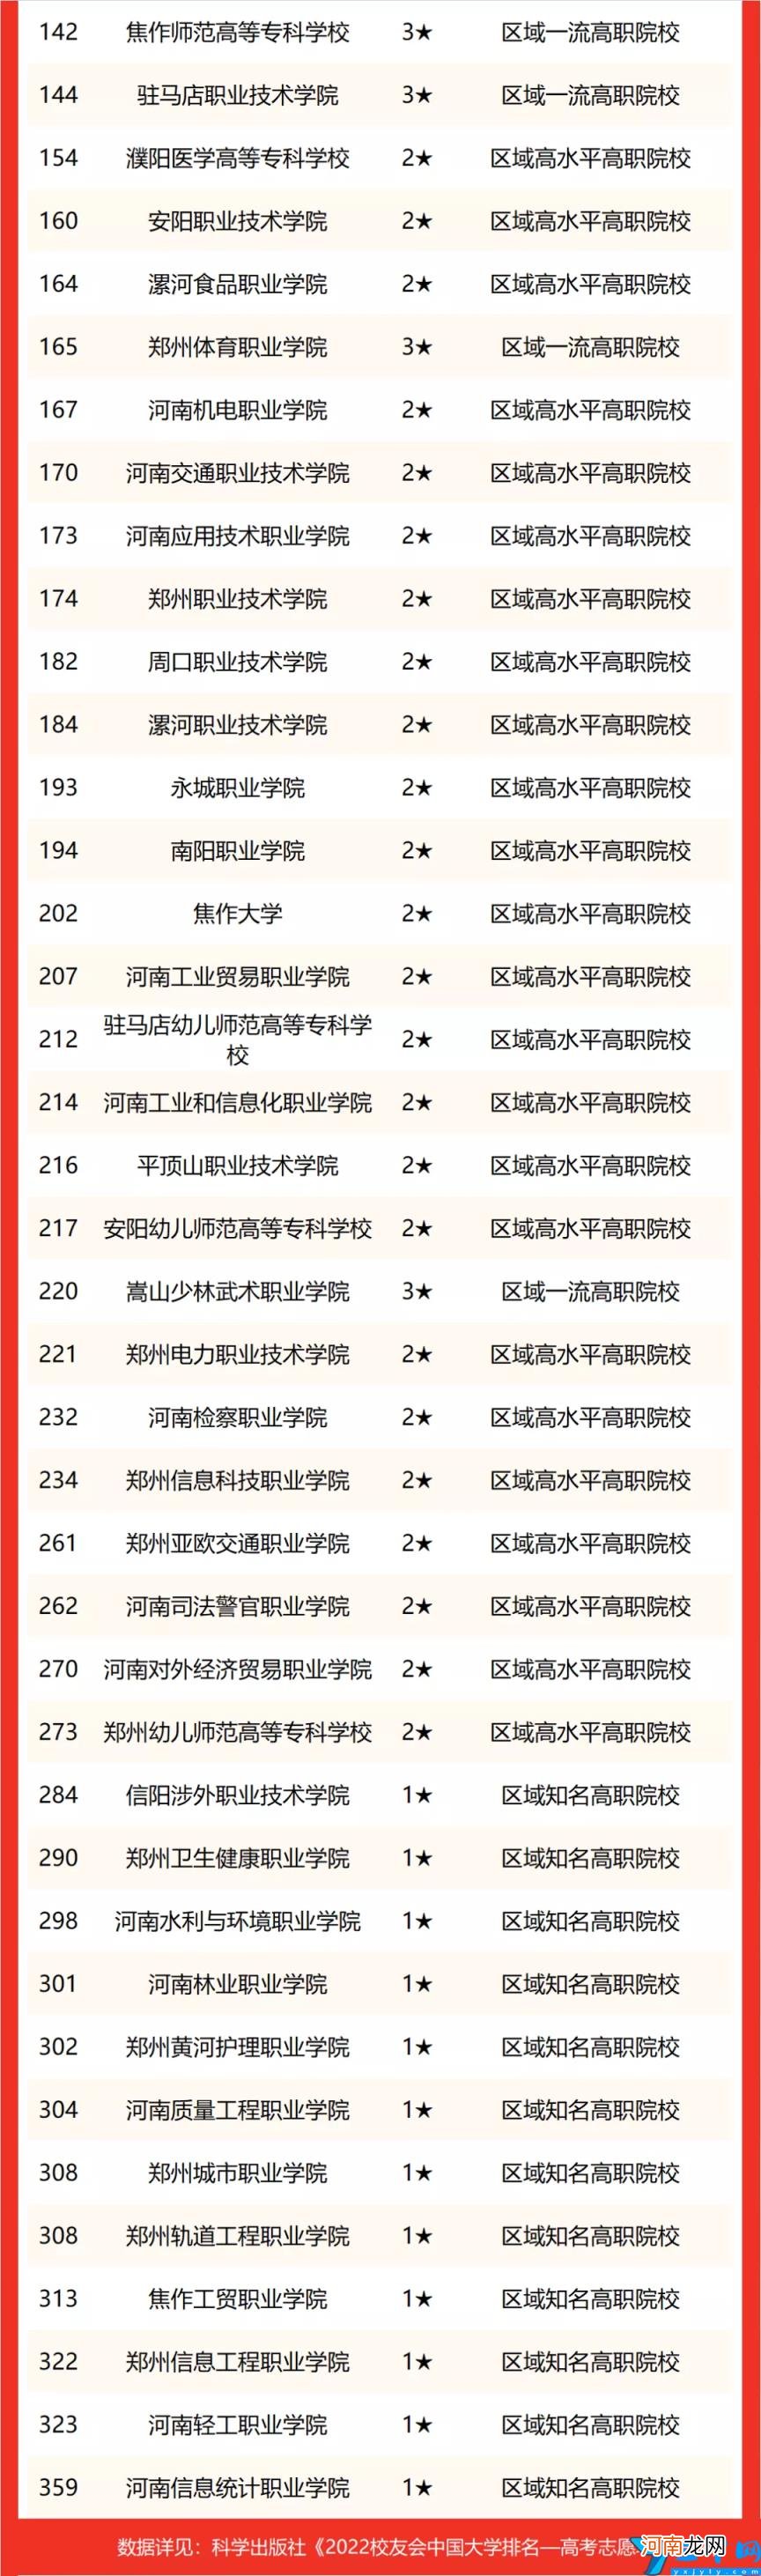 2022年最好的十所大学 河南的大学排名榜名单